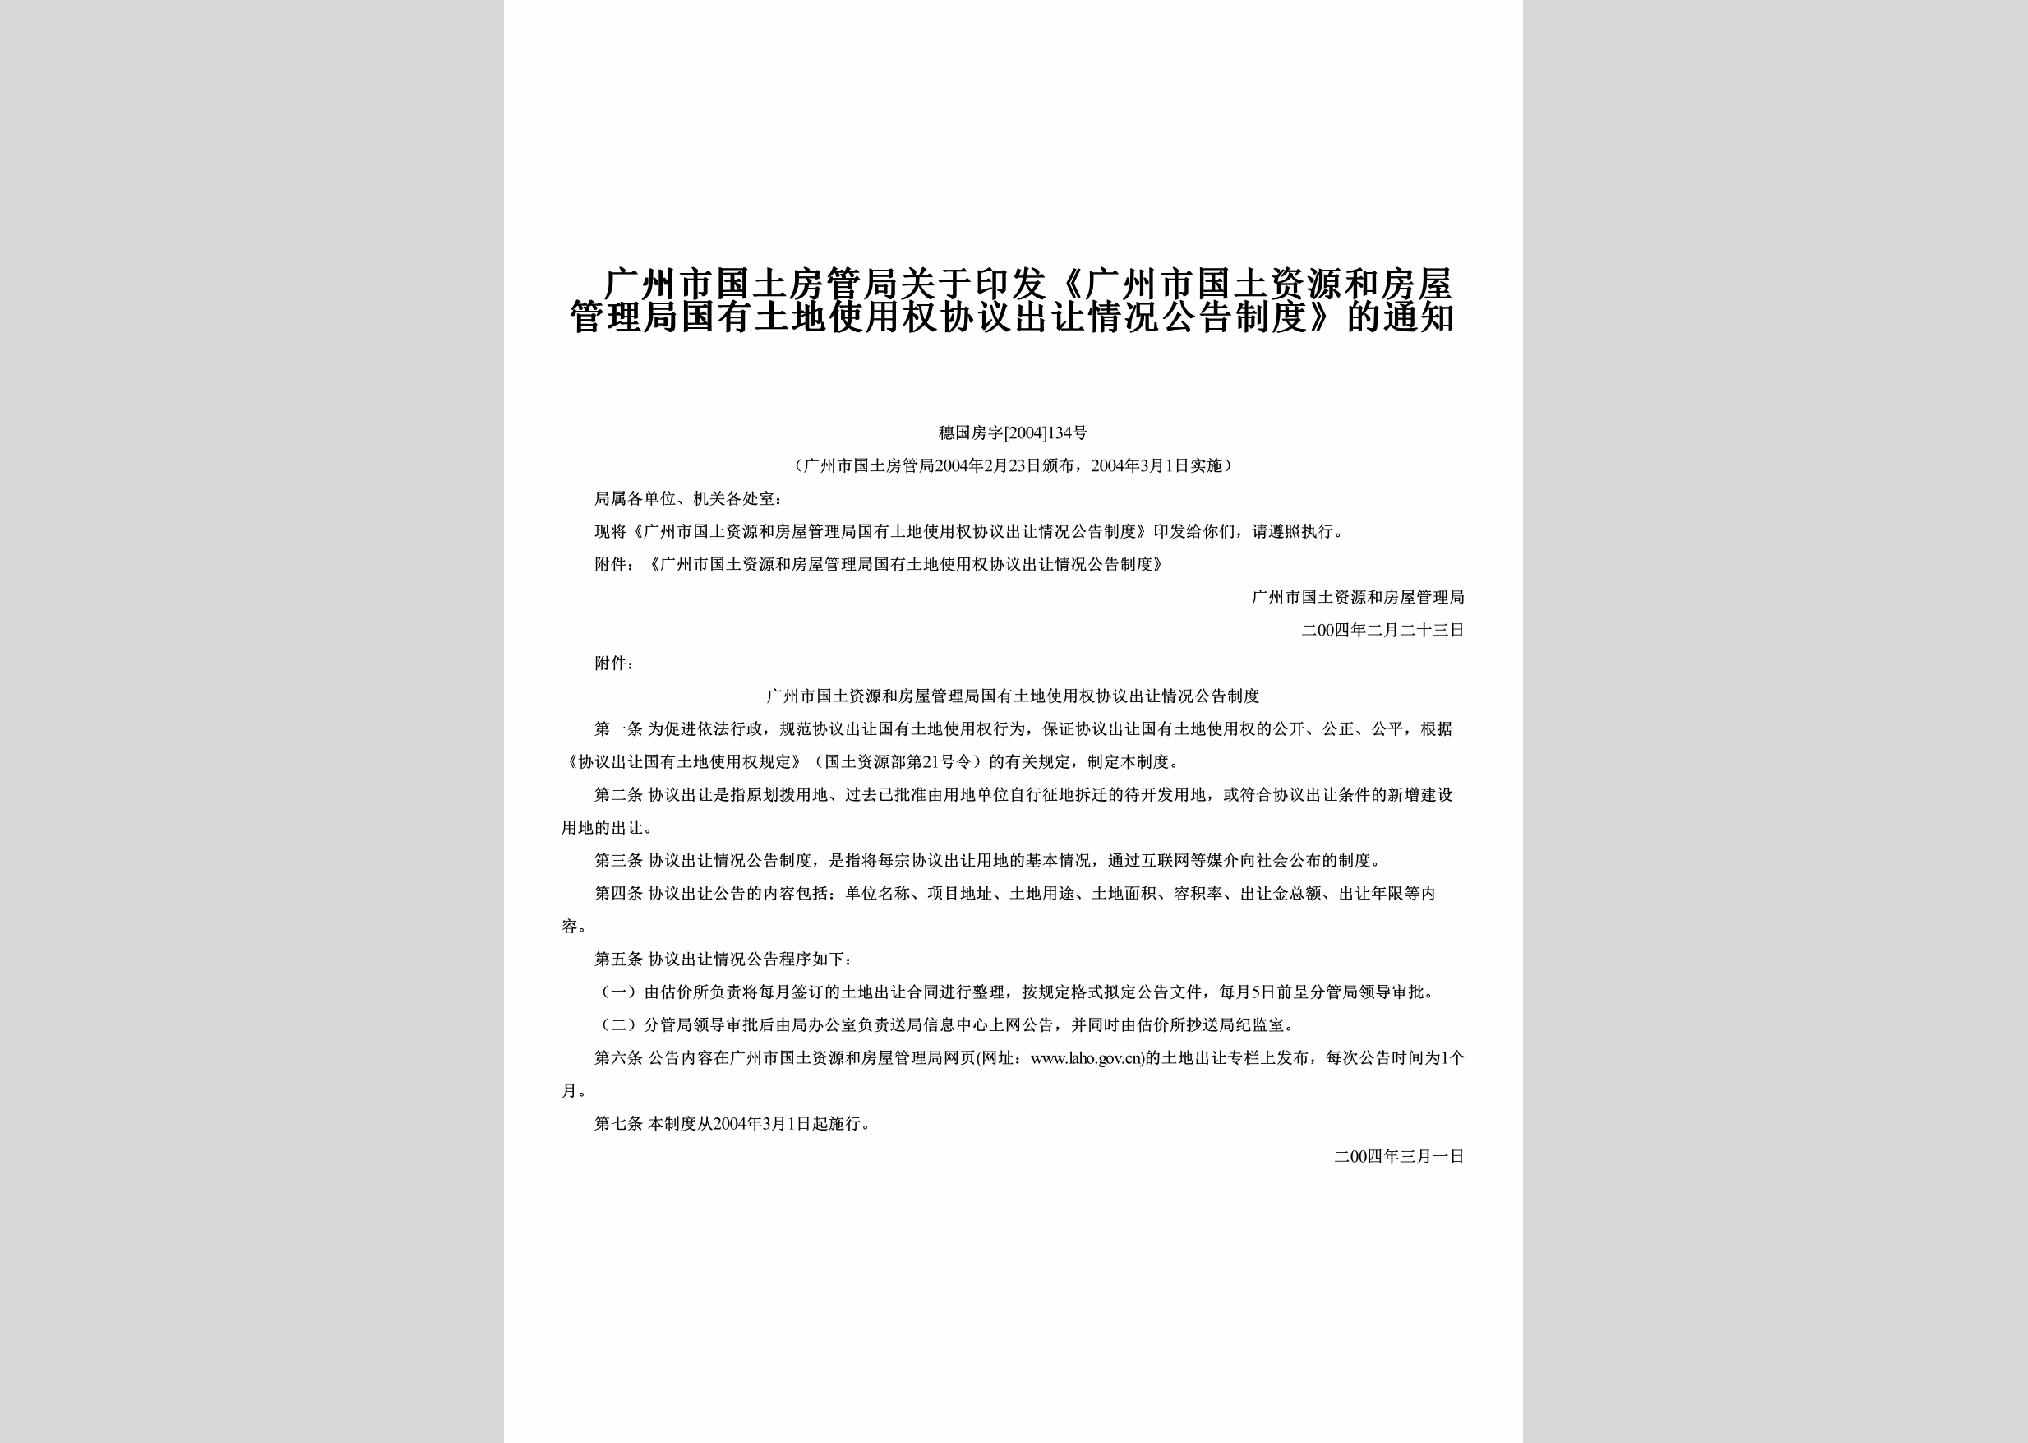 穗国房字[2004]134号：关于印发《广州市国土资源和房屋管理局国有土地使用权协议出让情况公告制度》的通知